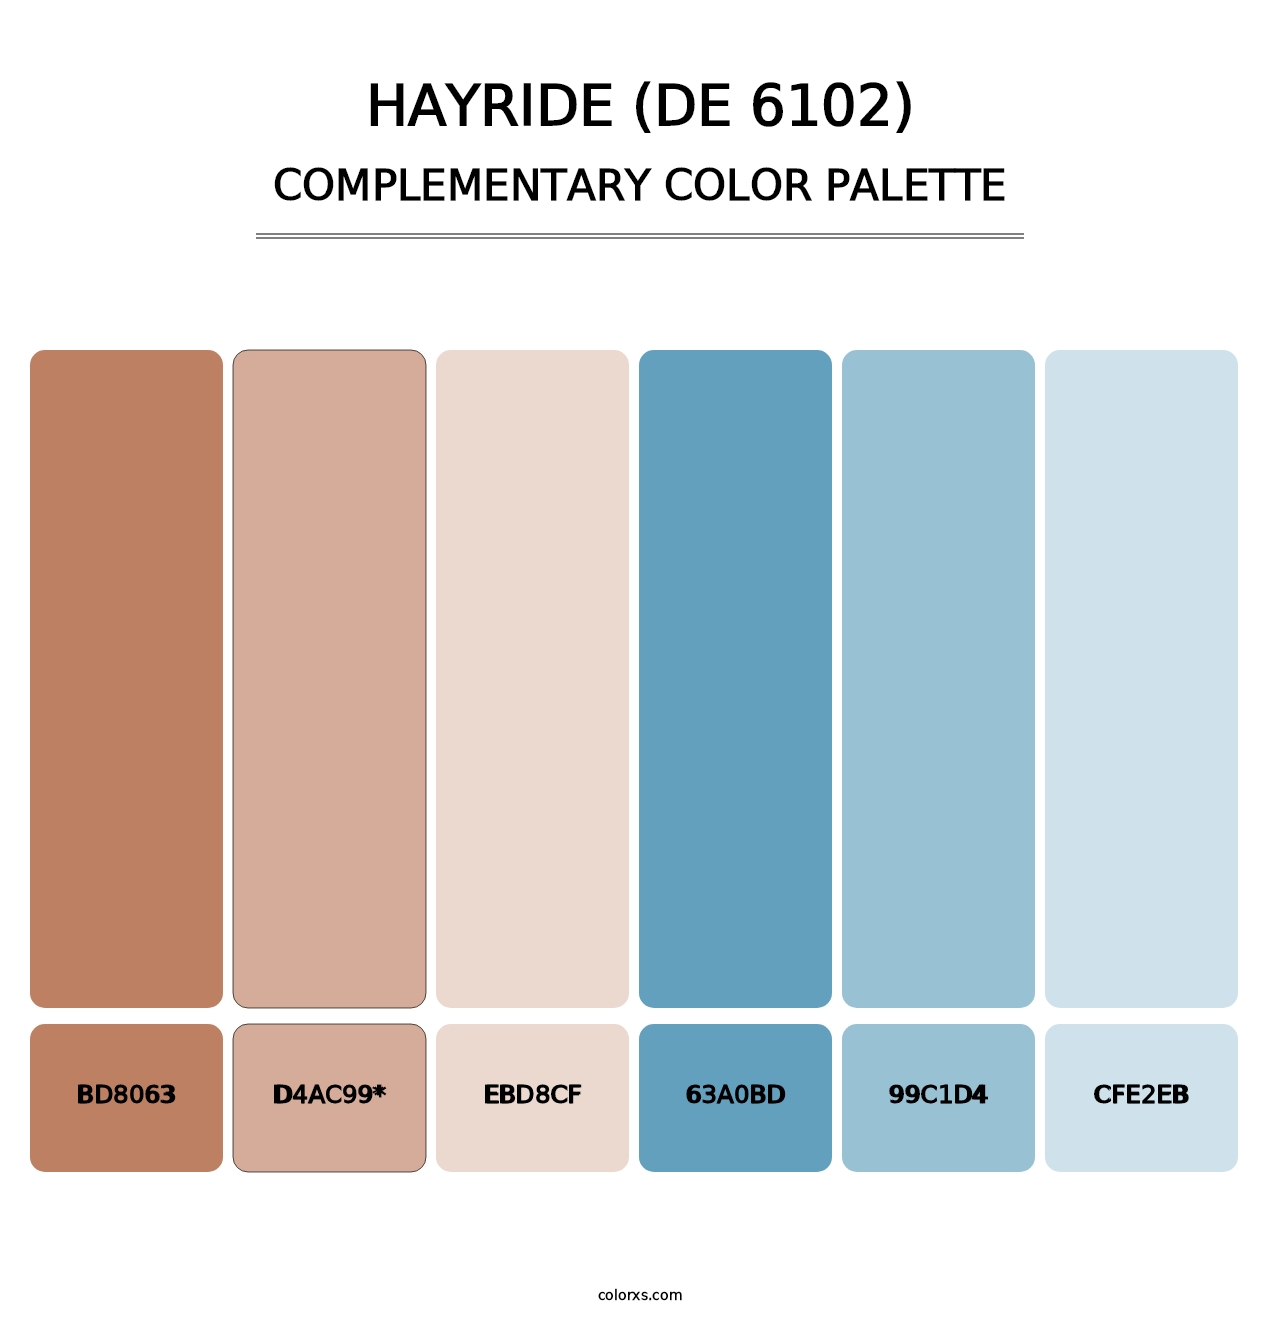 Hayride (DE 6102) - Complementary Color Palette